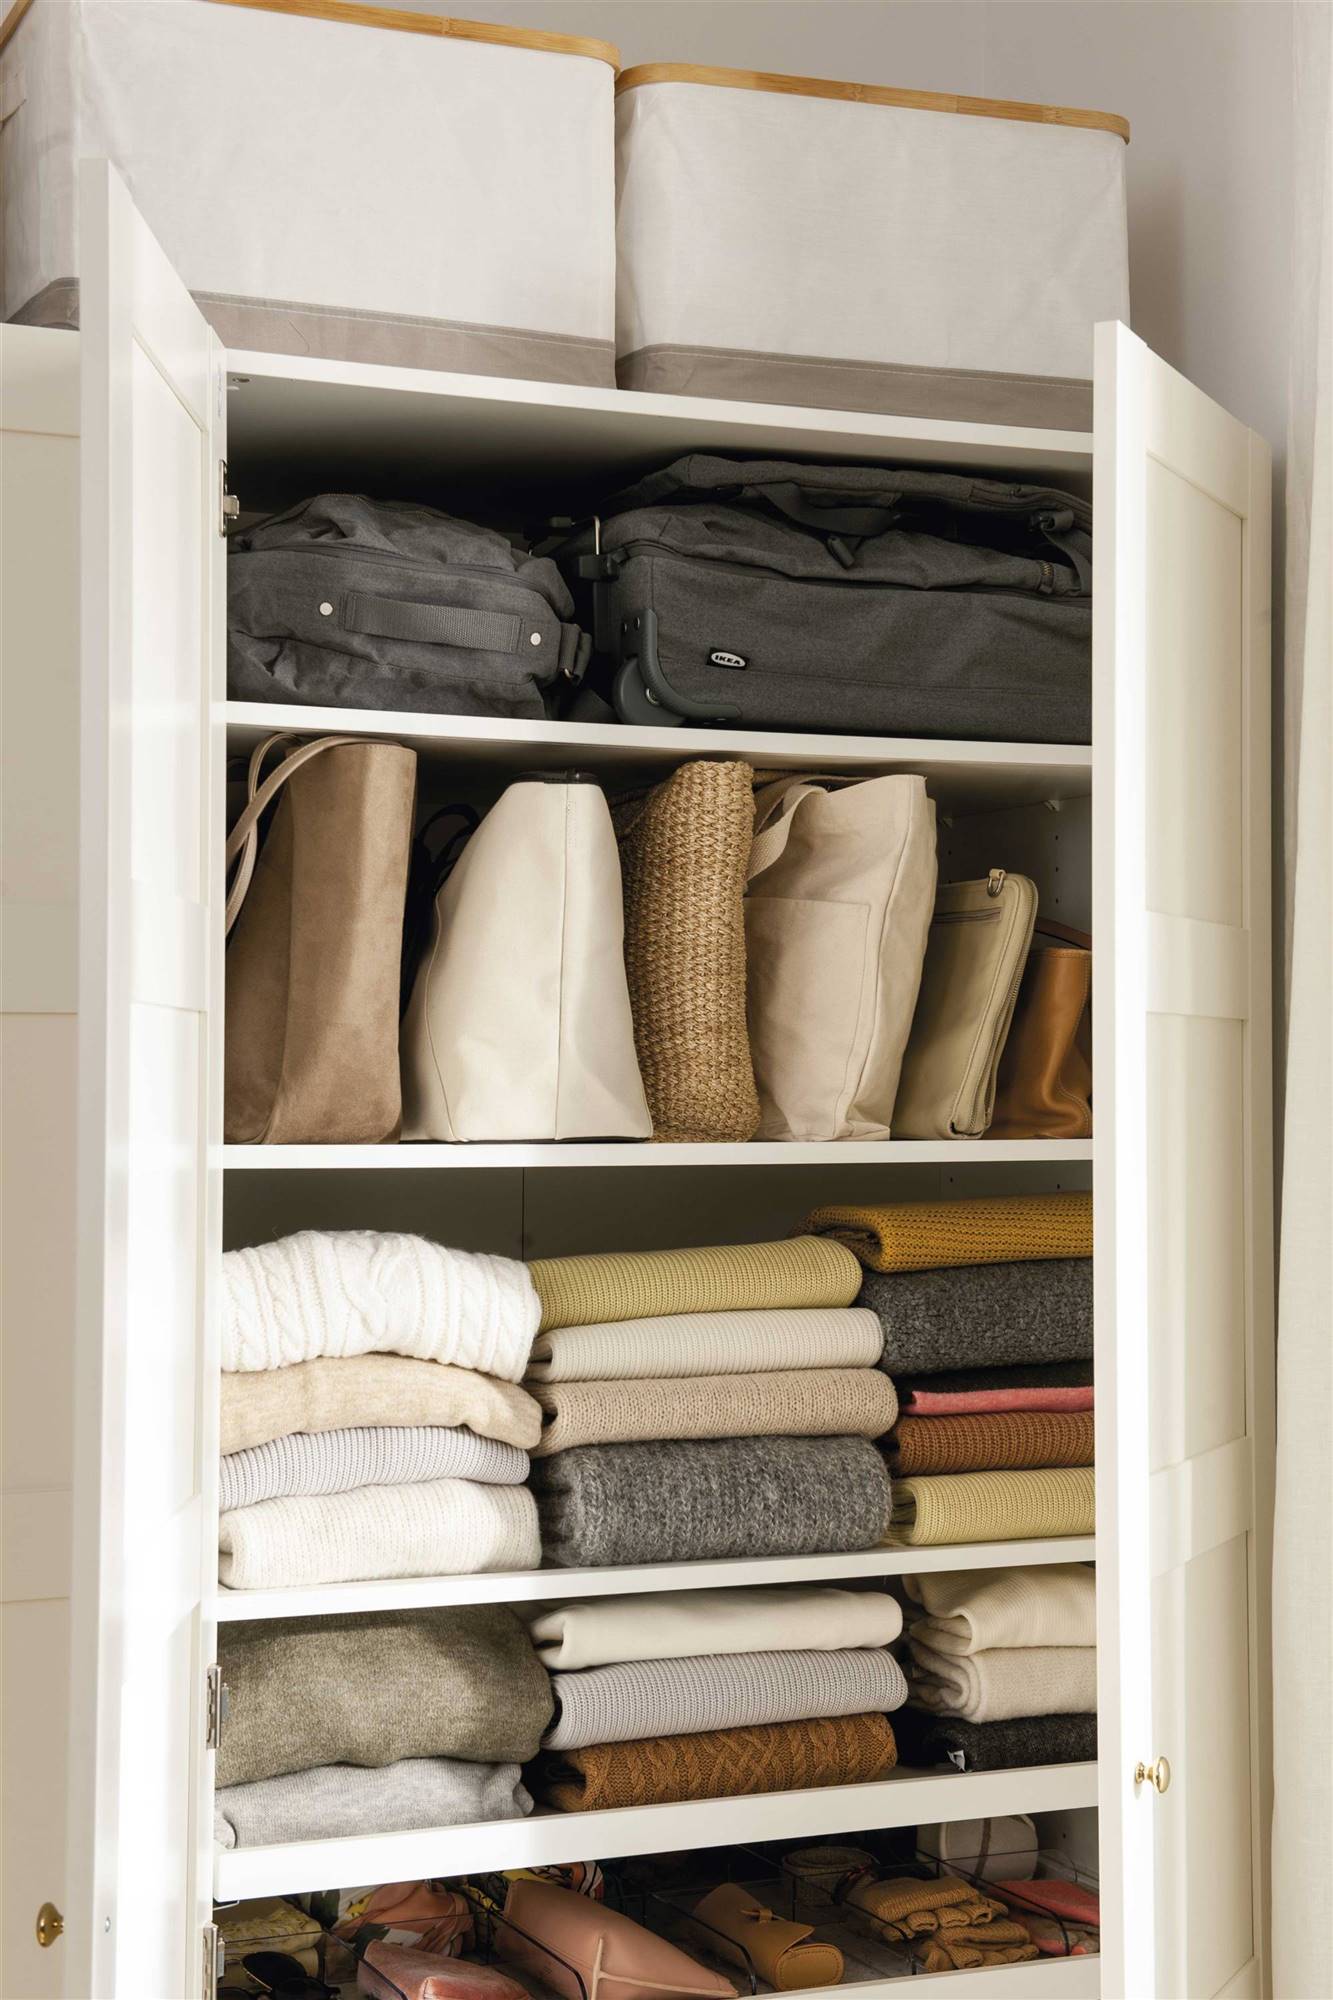 interior-de-armario-con-ropa-doblada-y-cajas-00522406